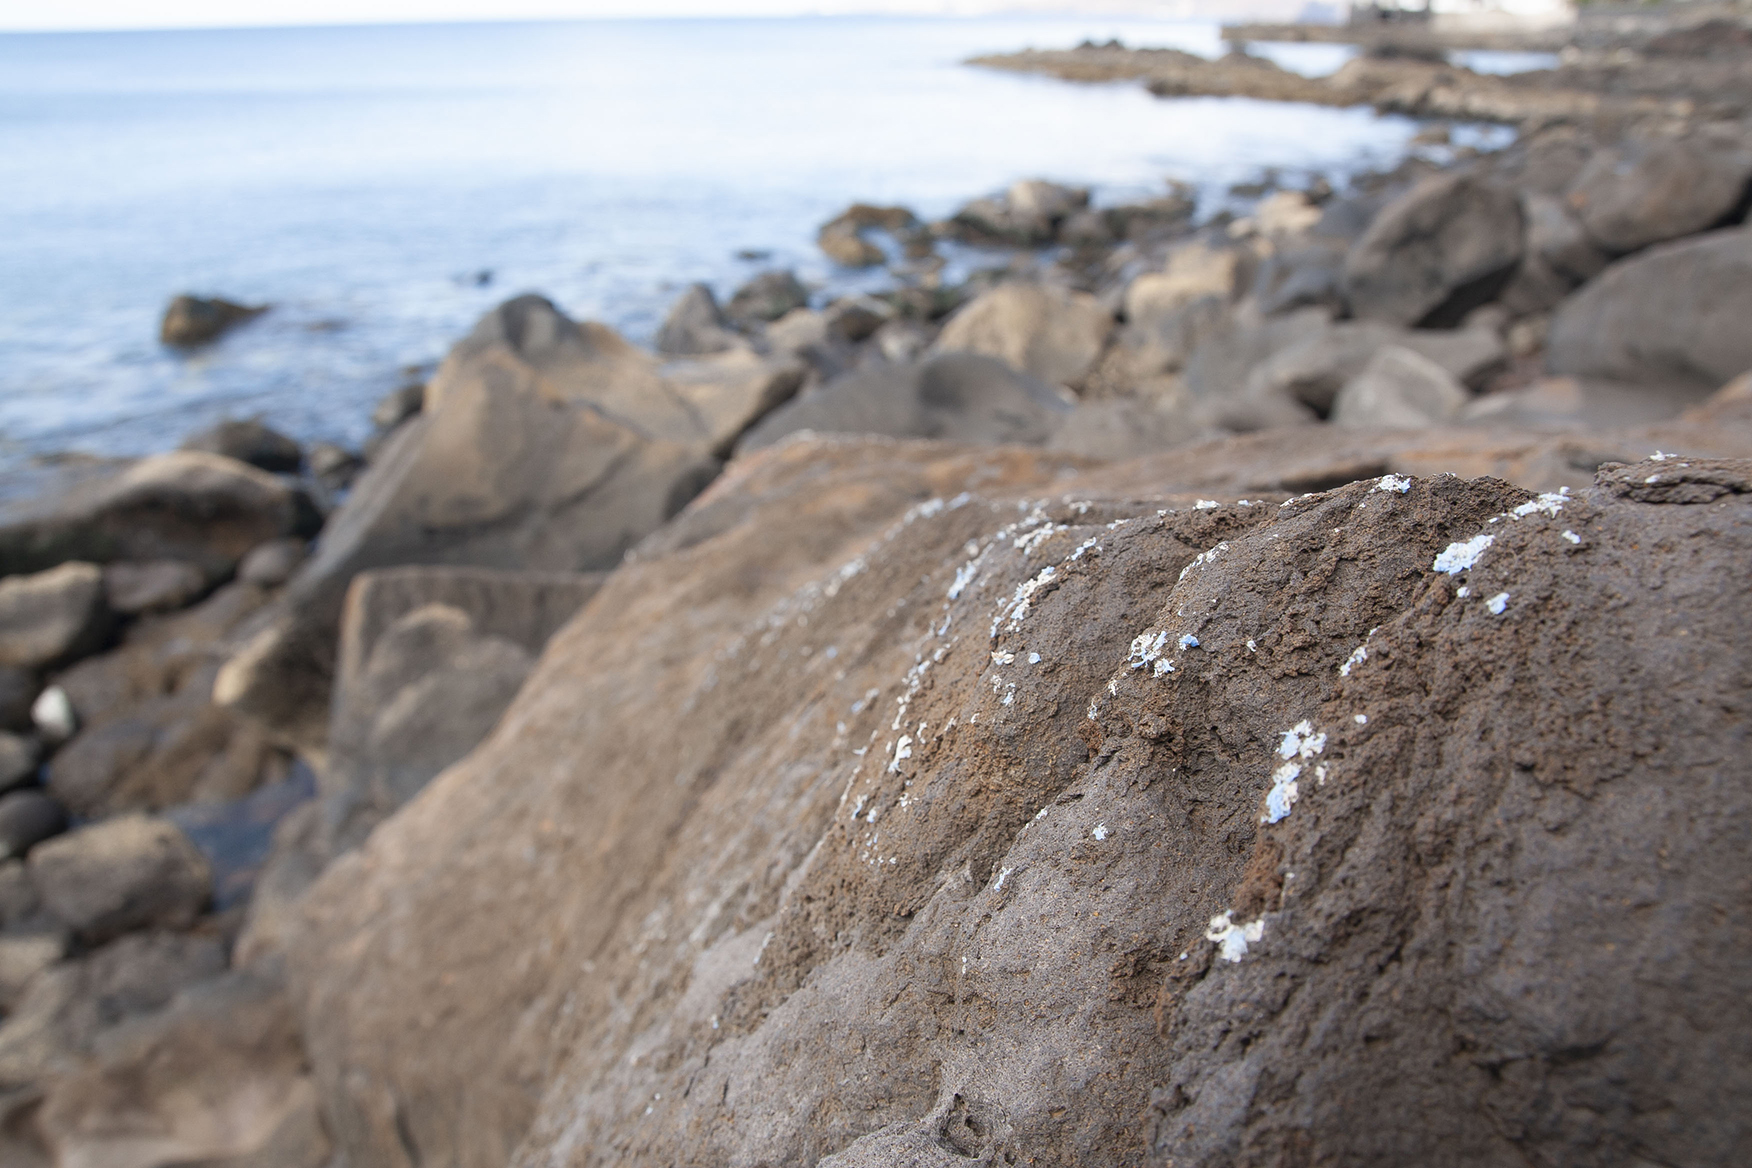 Le plasticroûte, une nouvelle roche formée par les déchets plastique s’étend sur le littoral à Madère. © Ignacio Gestoso